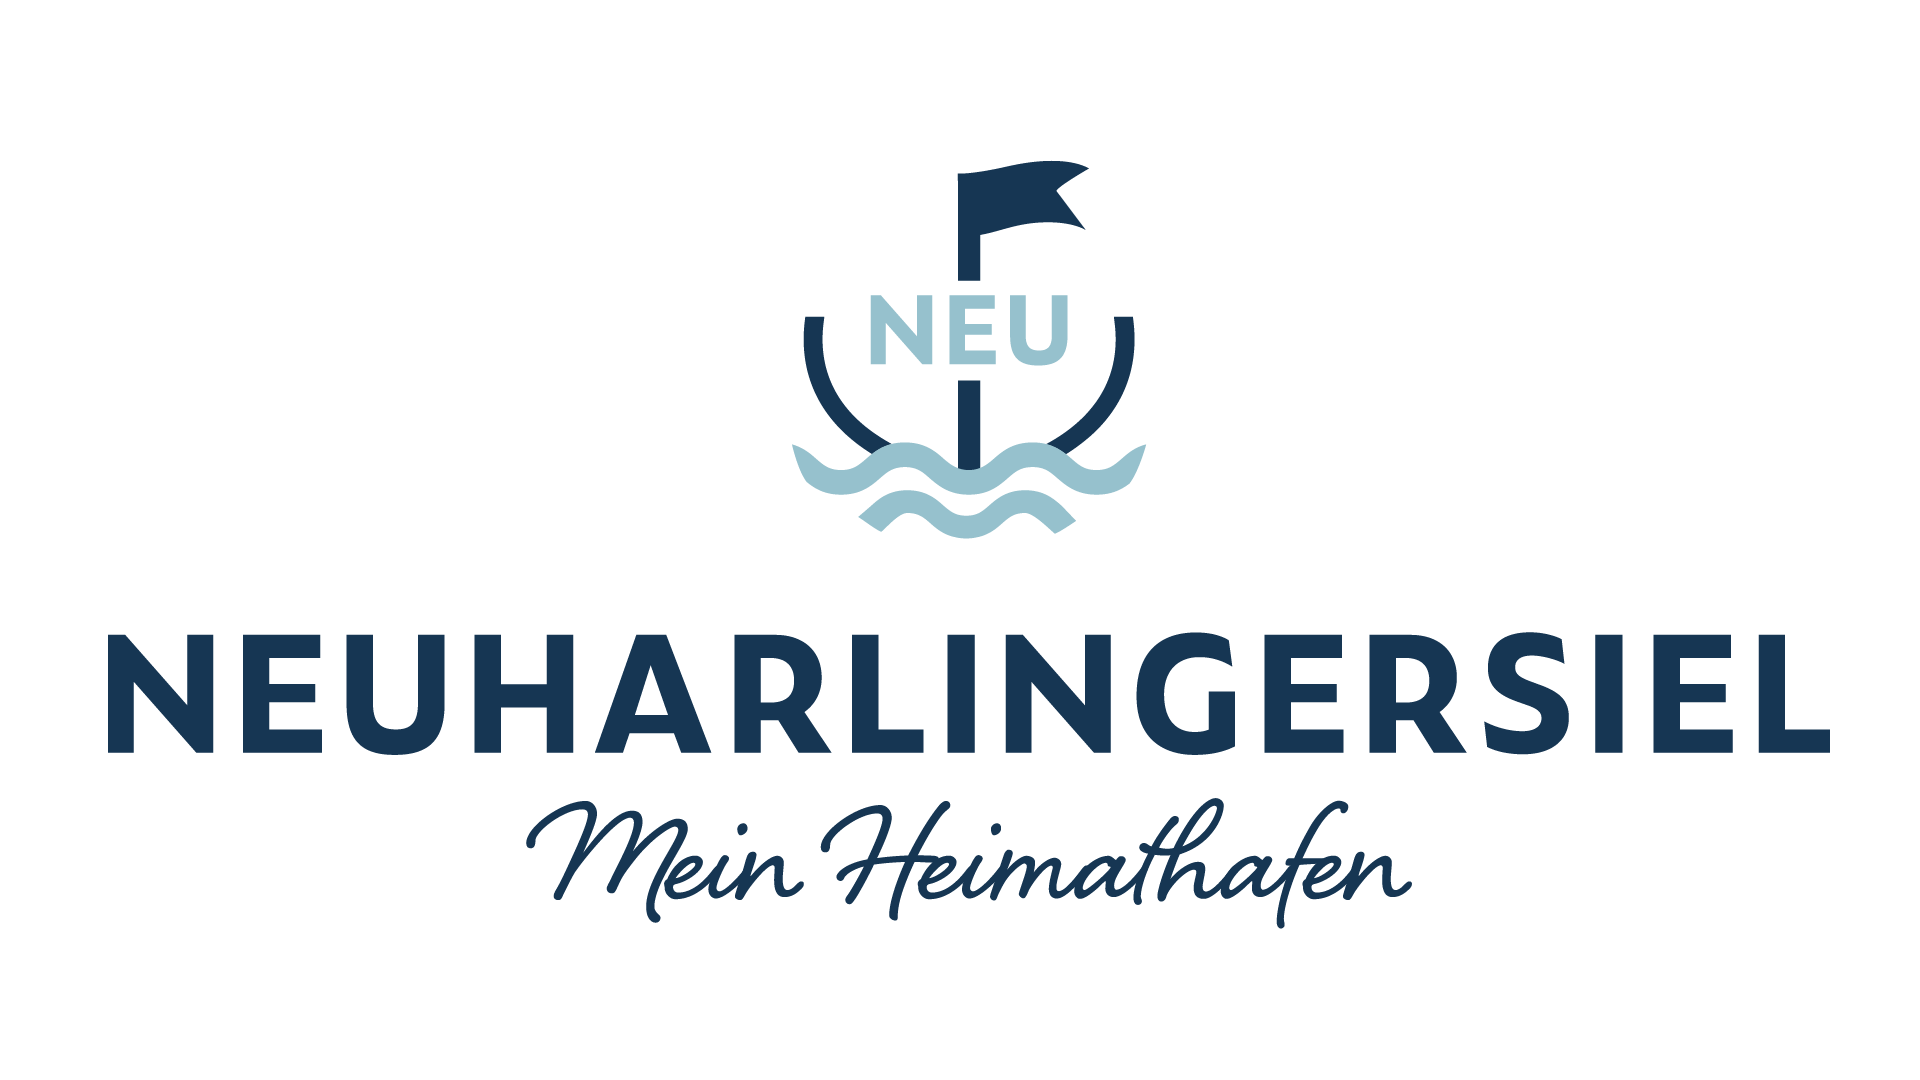 Neuharlingersiel - Mein Heimathafen